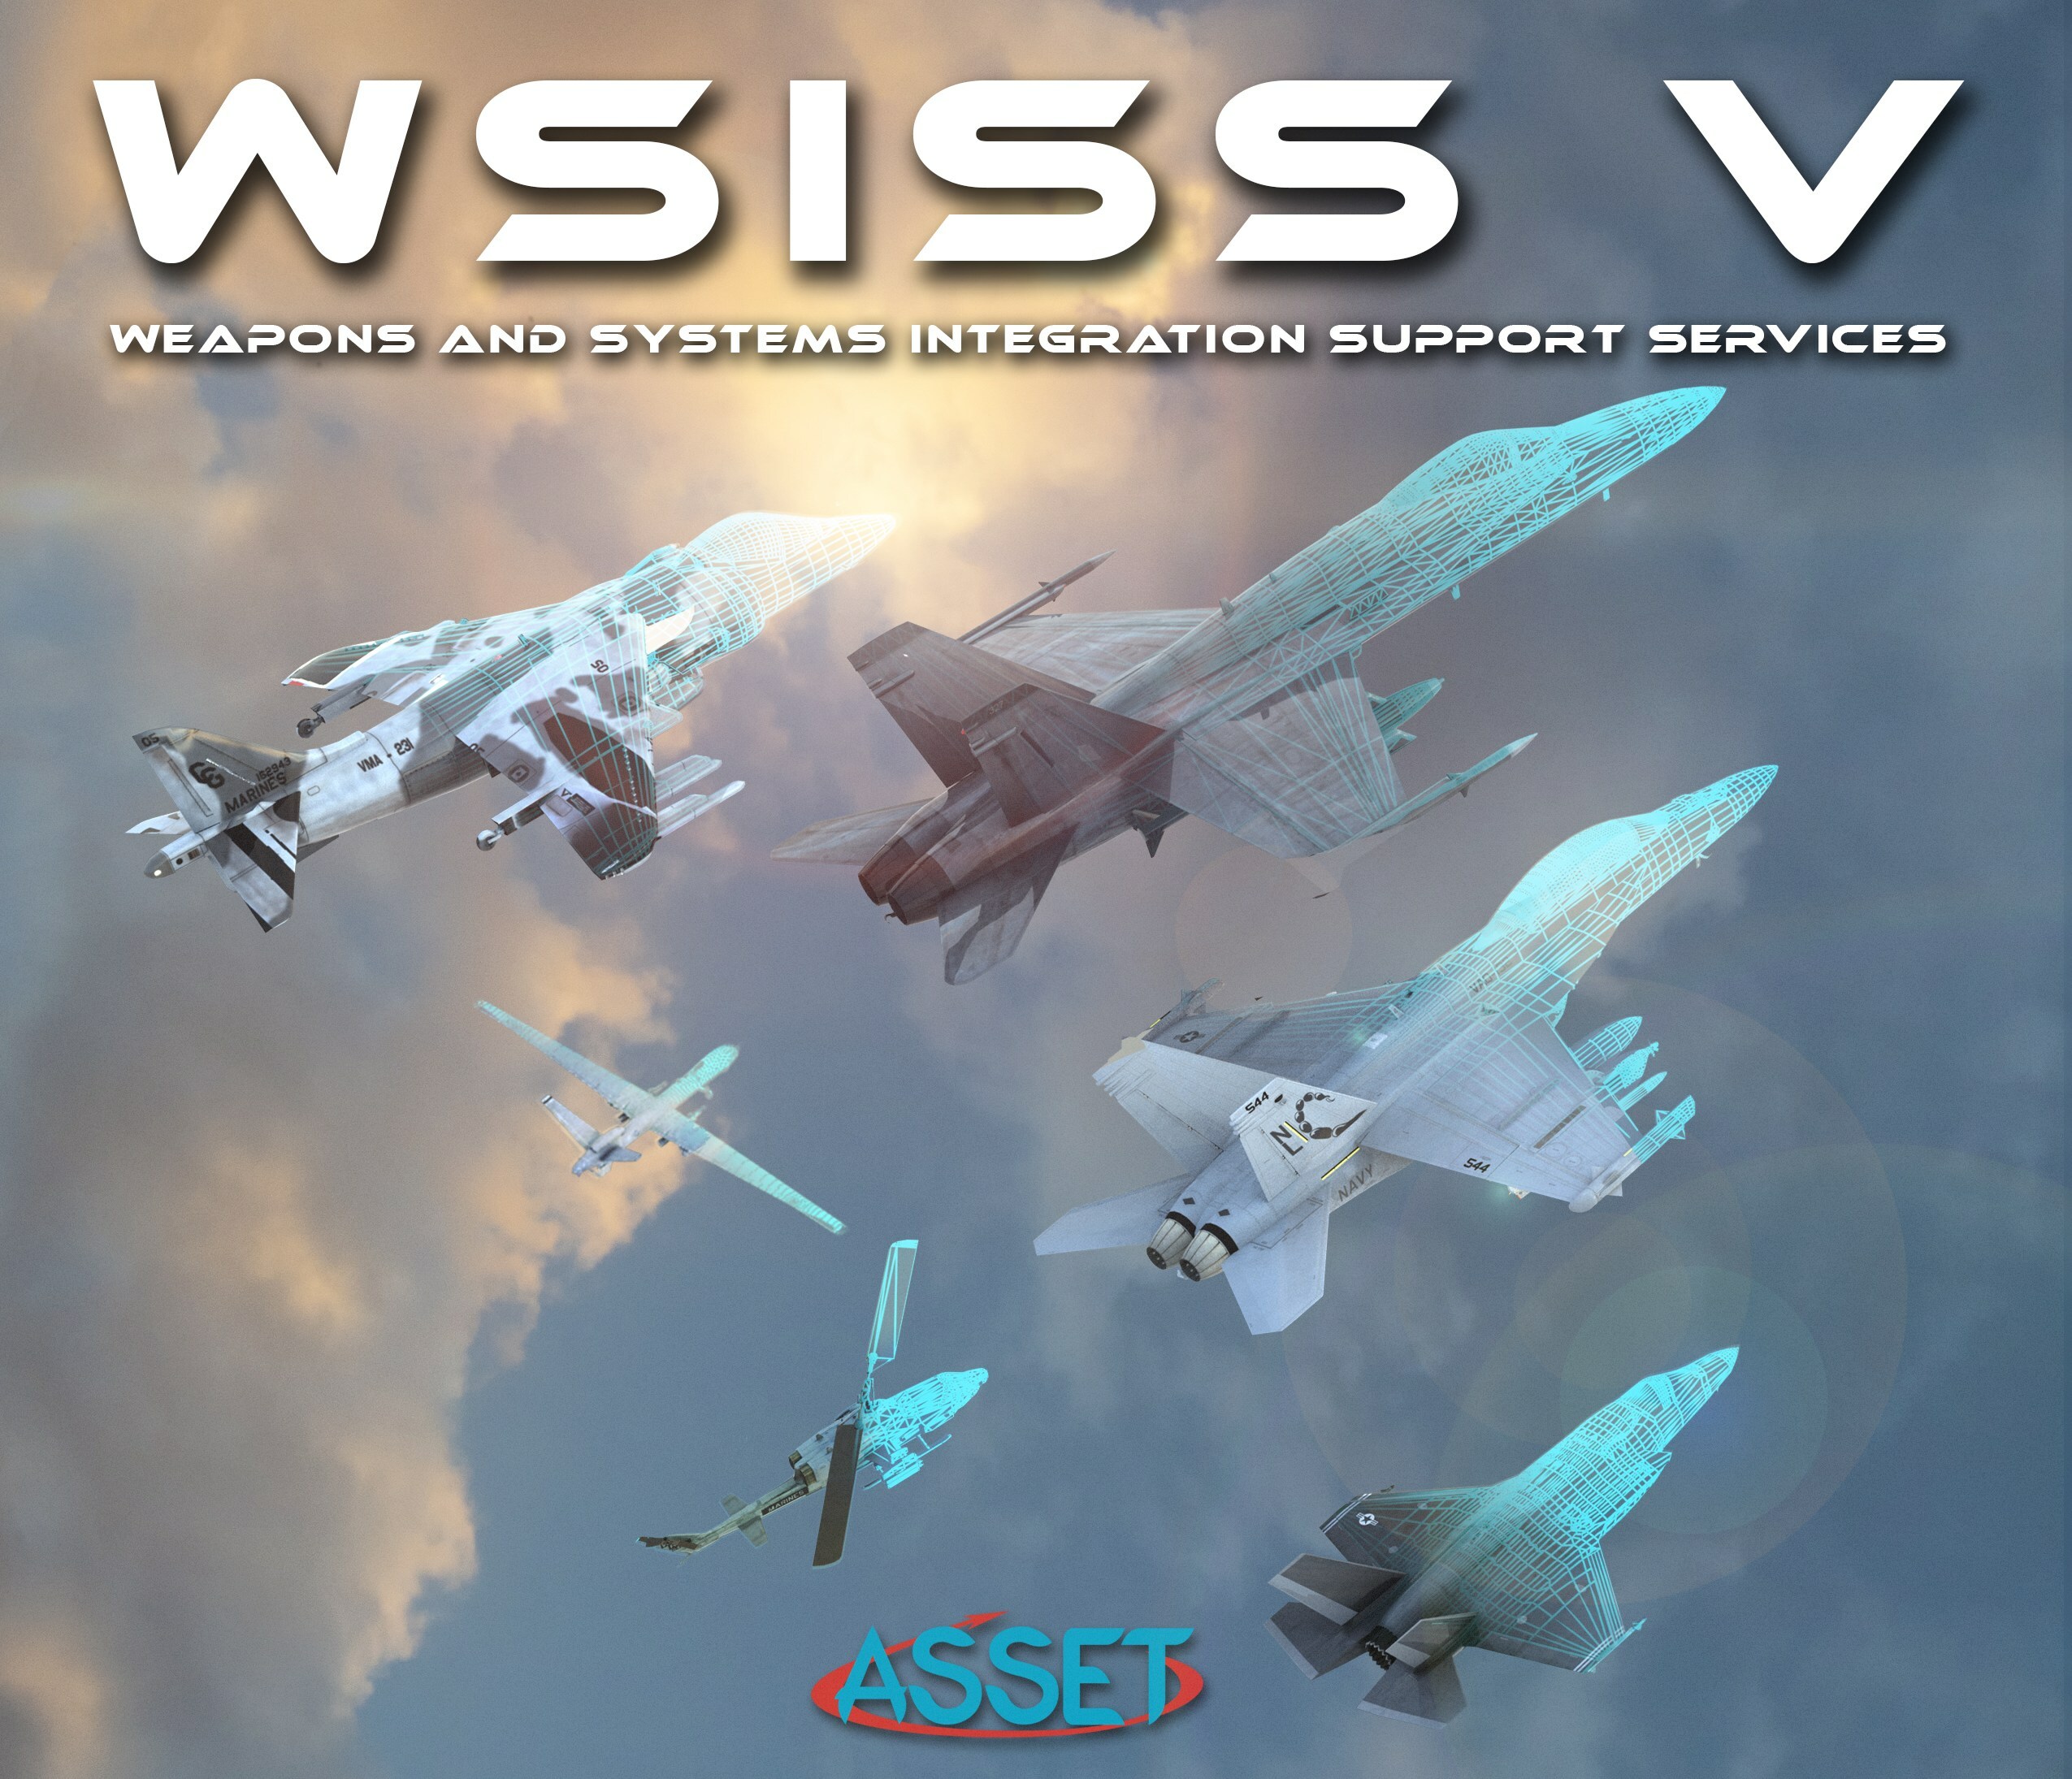 ASSET LLC will support NAWCWD under the WSISS V contract. (PRNewsfoto/ASSET LLC)